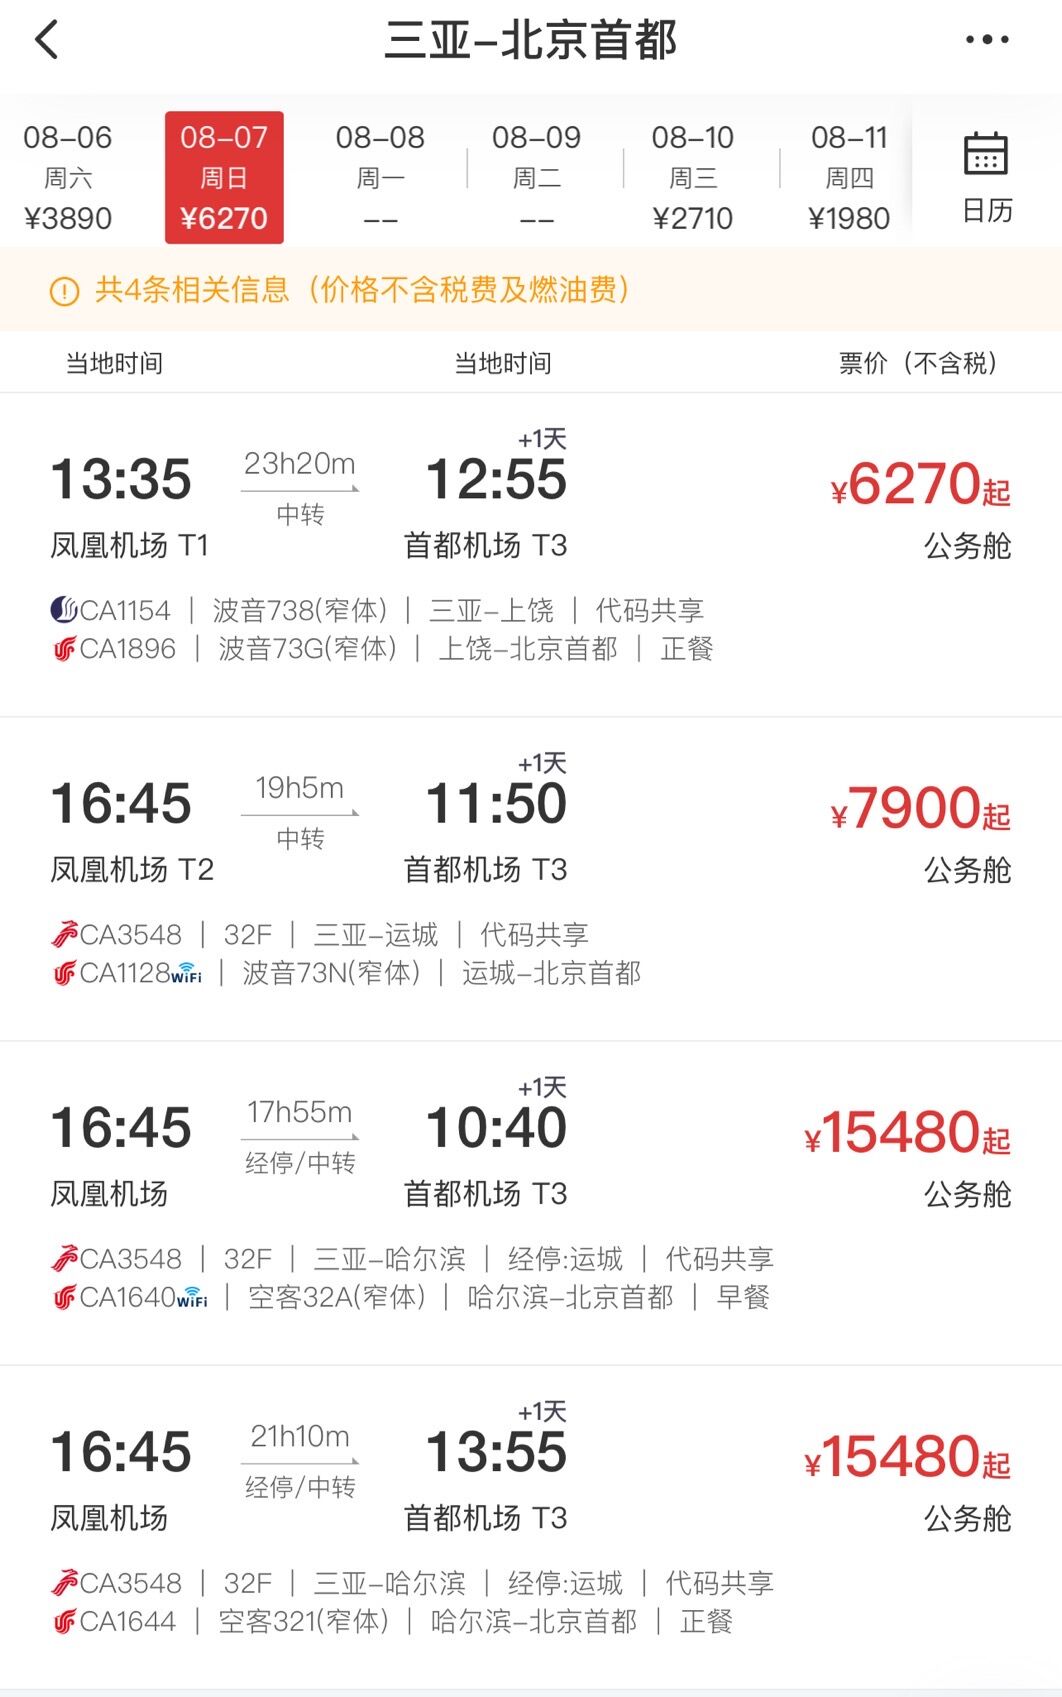 节后多条航线机票“白菜价” 北京飞三亚仅售400多元 - 新旅界